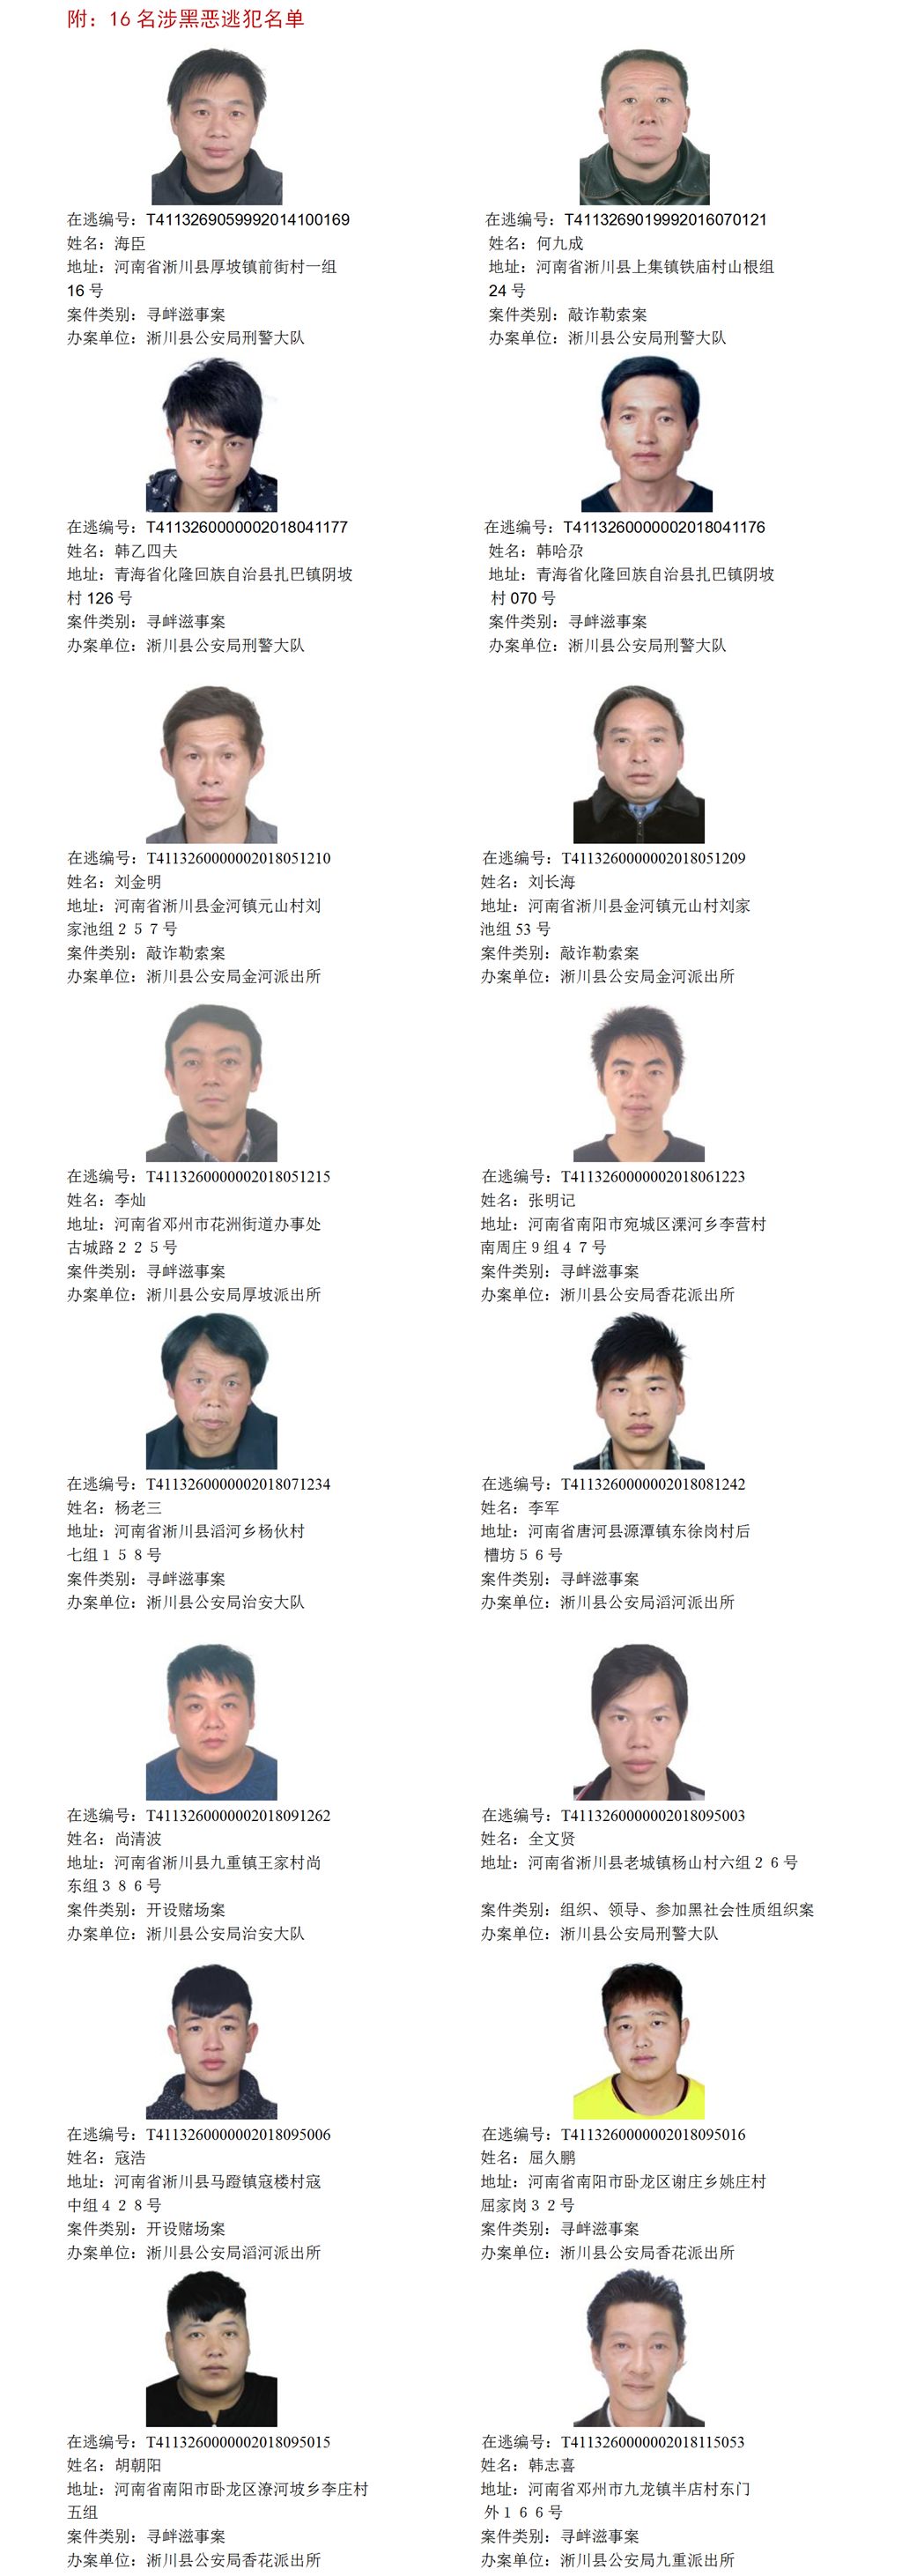 淅川县公安局通缉令,全城公开通缉这16名逃犯!